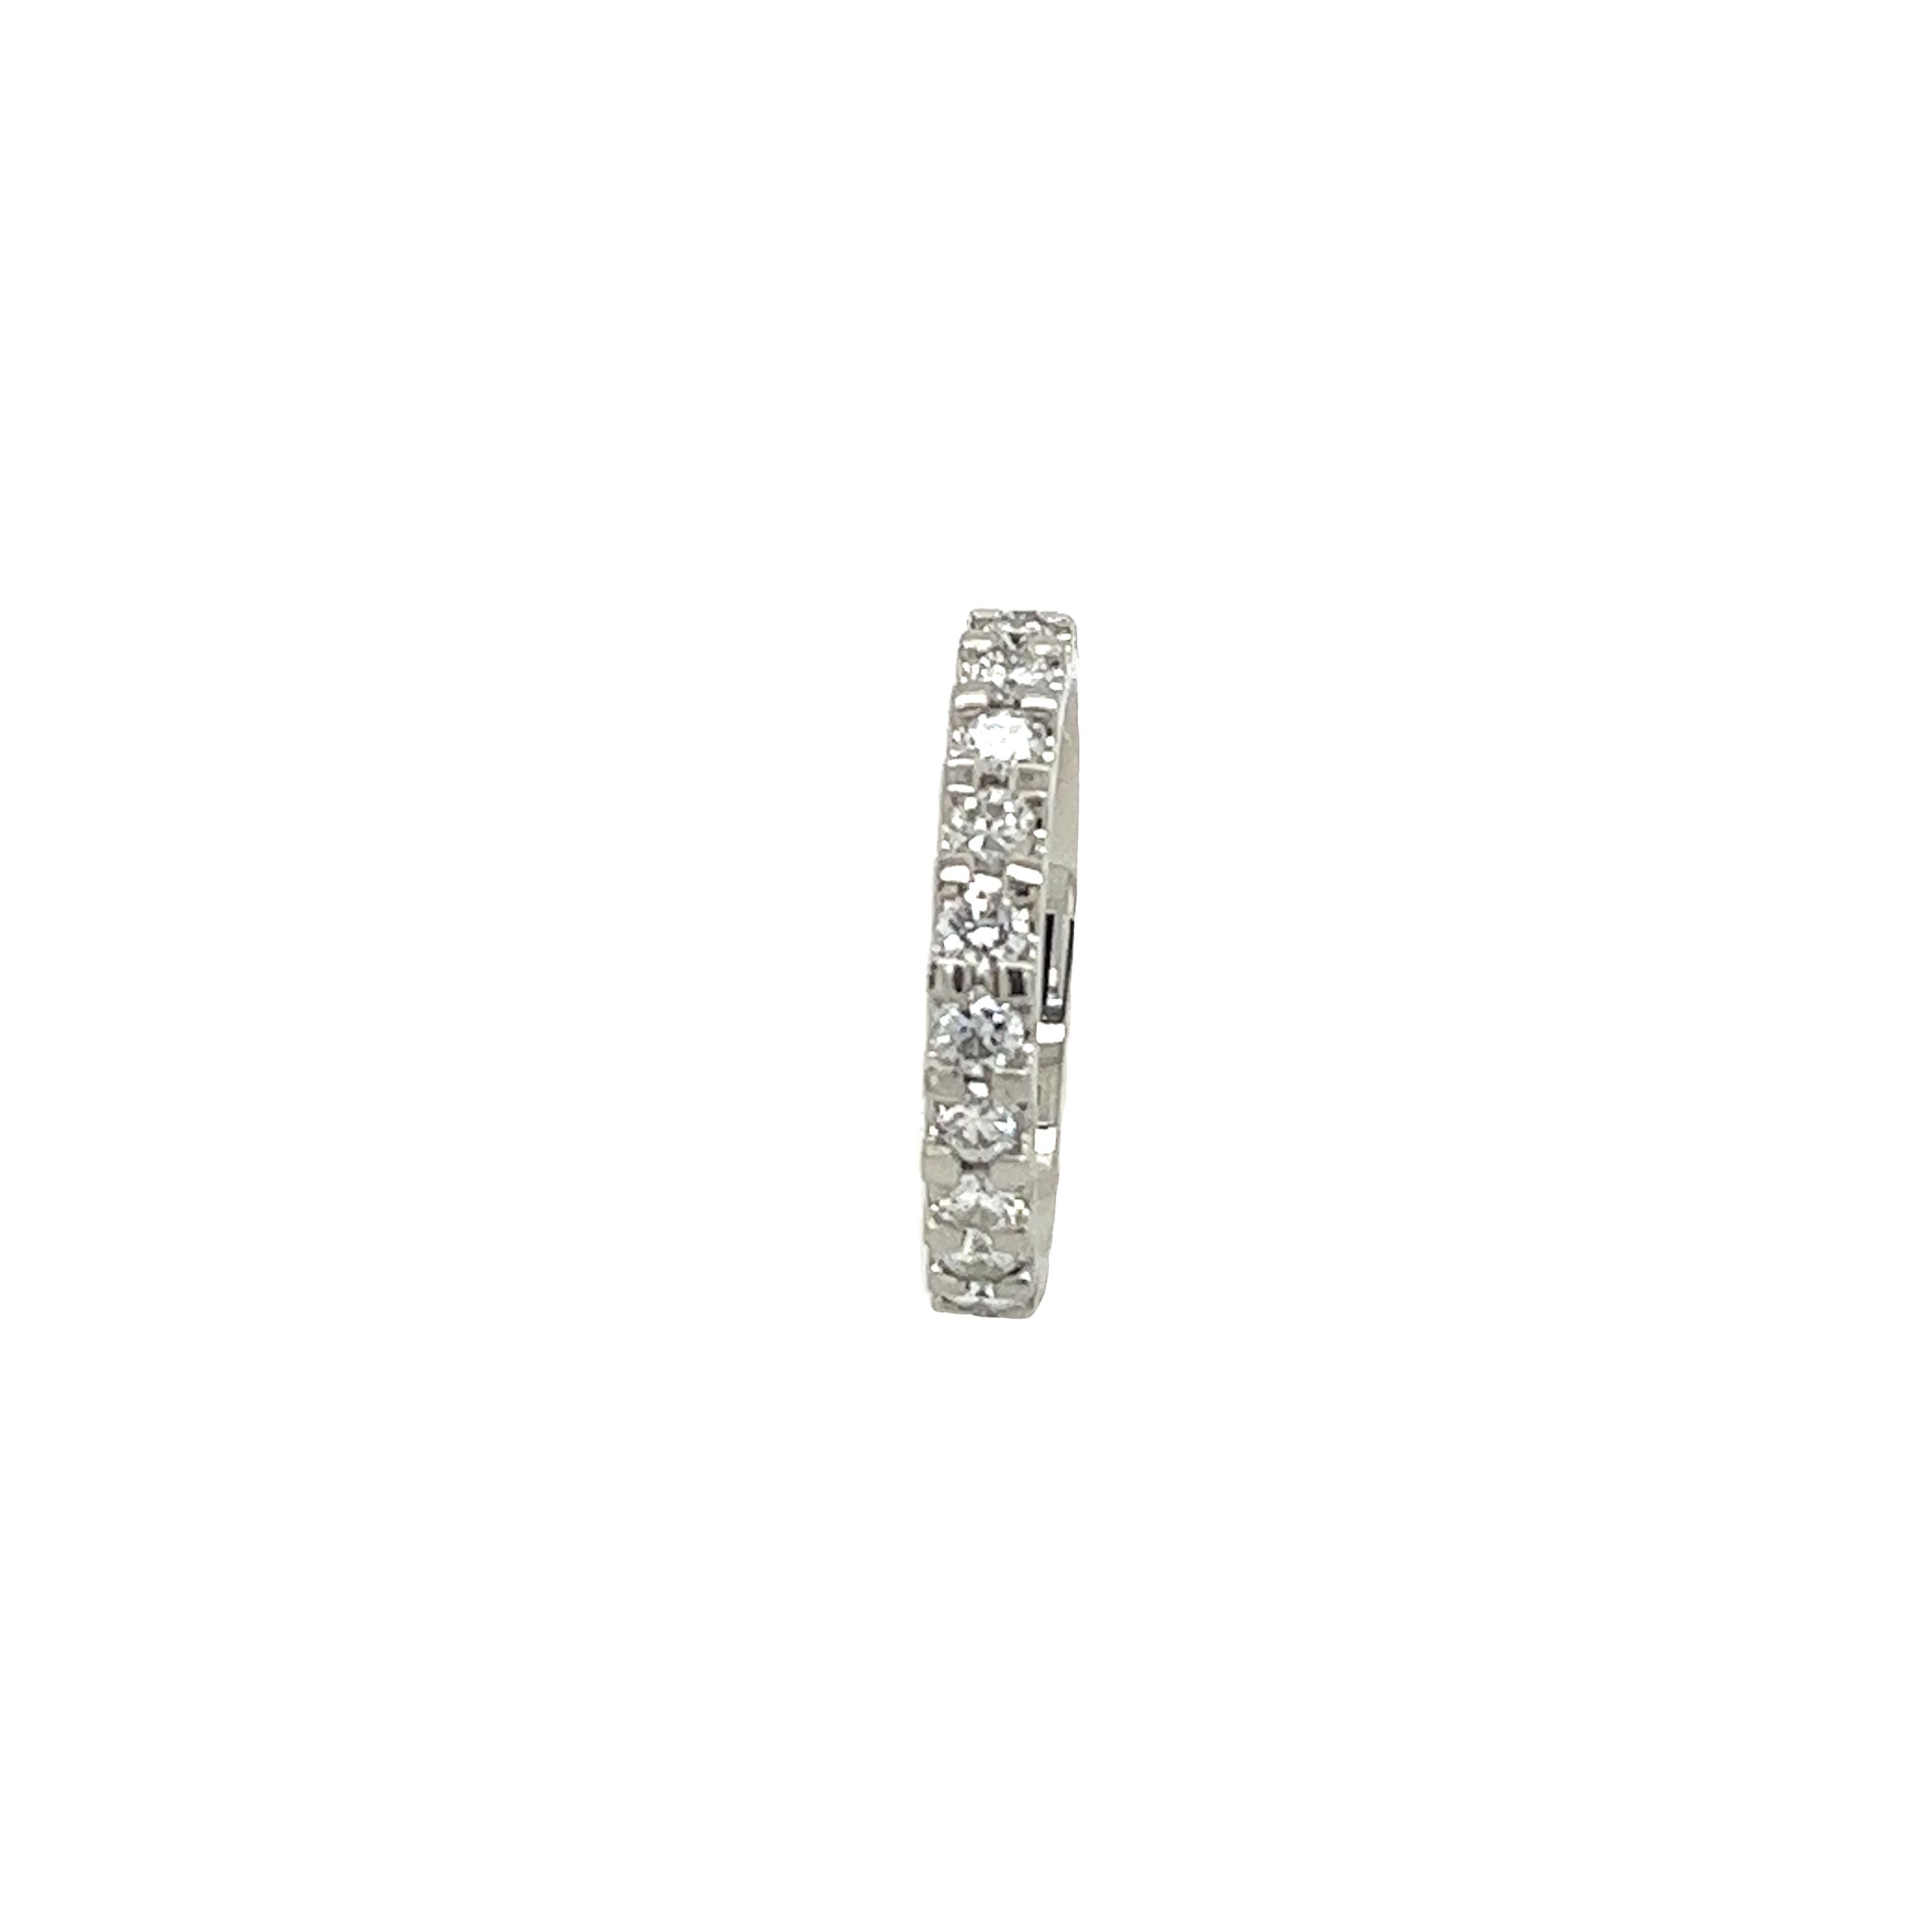 Ein schlichtes und elegantes Design mit atemberaubenden 1,30 Karat im natürlichen Rundschliff
Diamanten, ist dieser Platinring perfekt für 
als Ehering oder als Ewigkeitsring. 

Gesamtgewicht der Diamanten: 1,30ct
Farbe des Diamanten: H
Diamant